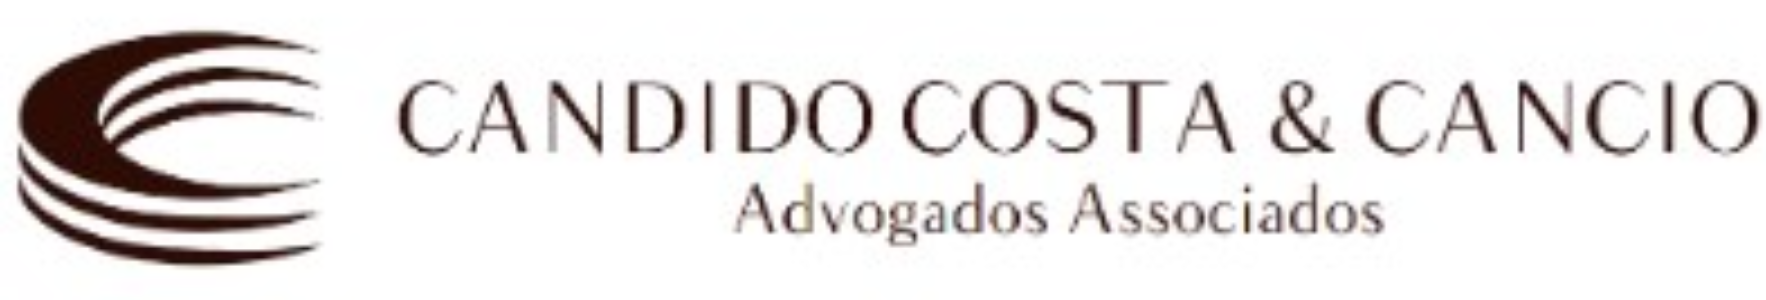 Candido Costa & Cancio Advogados Associados